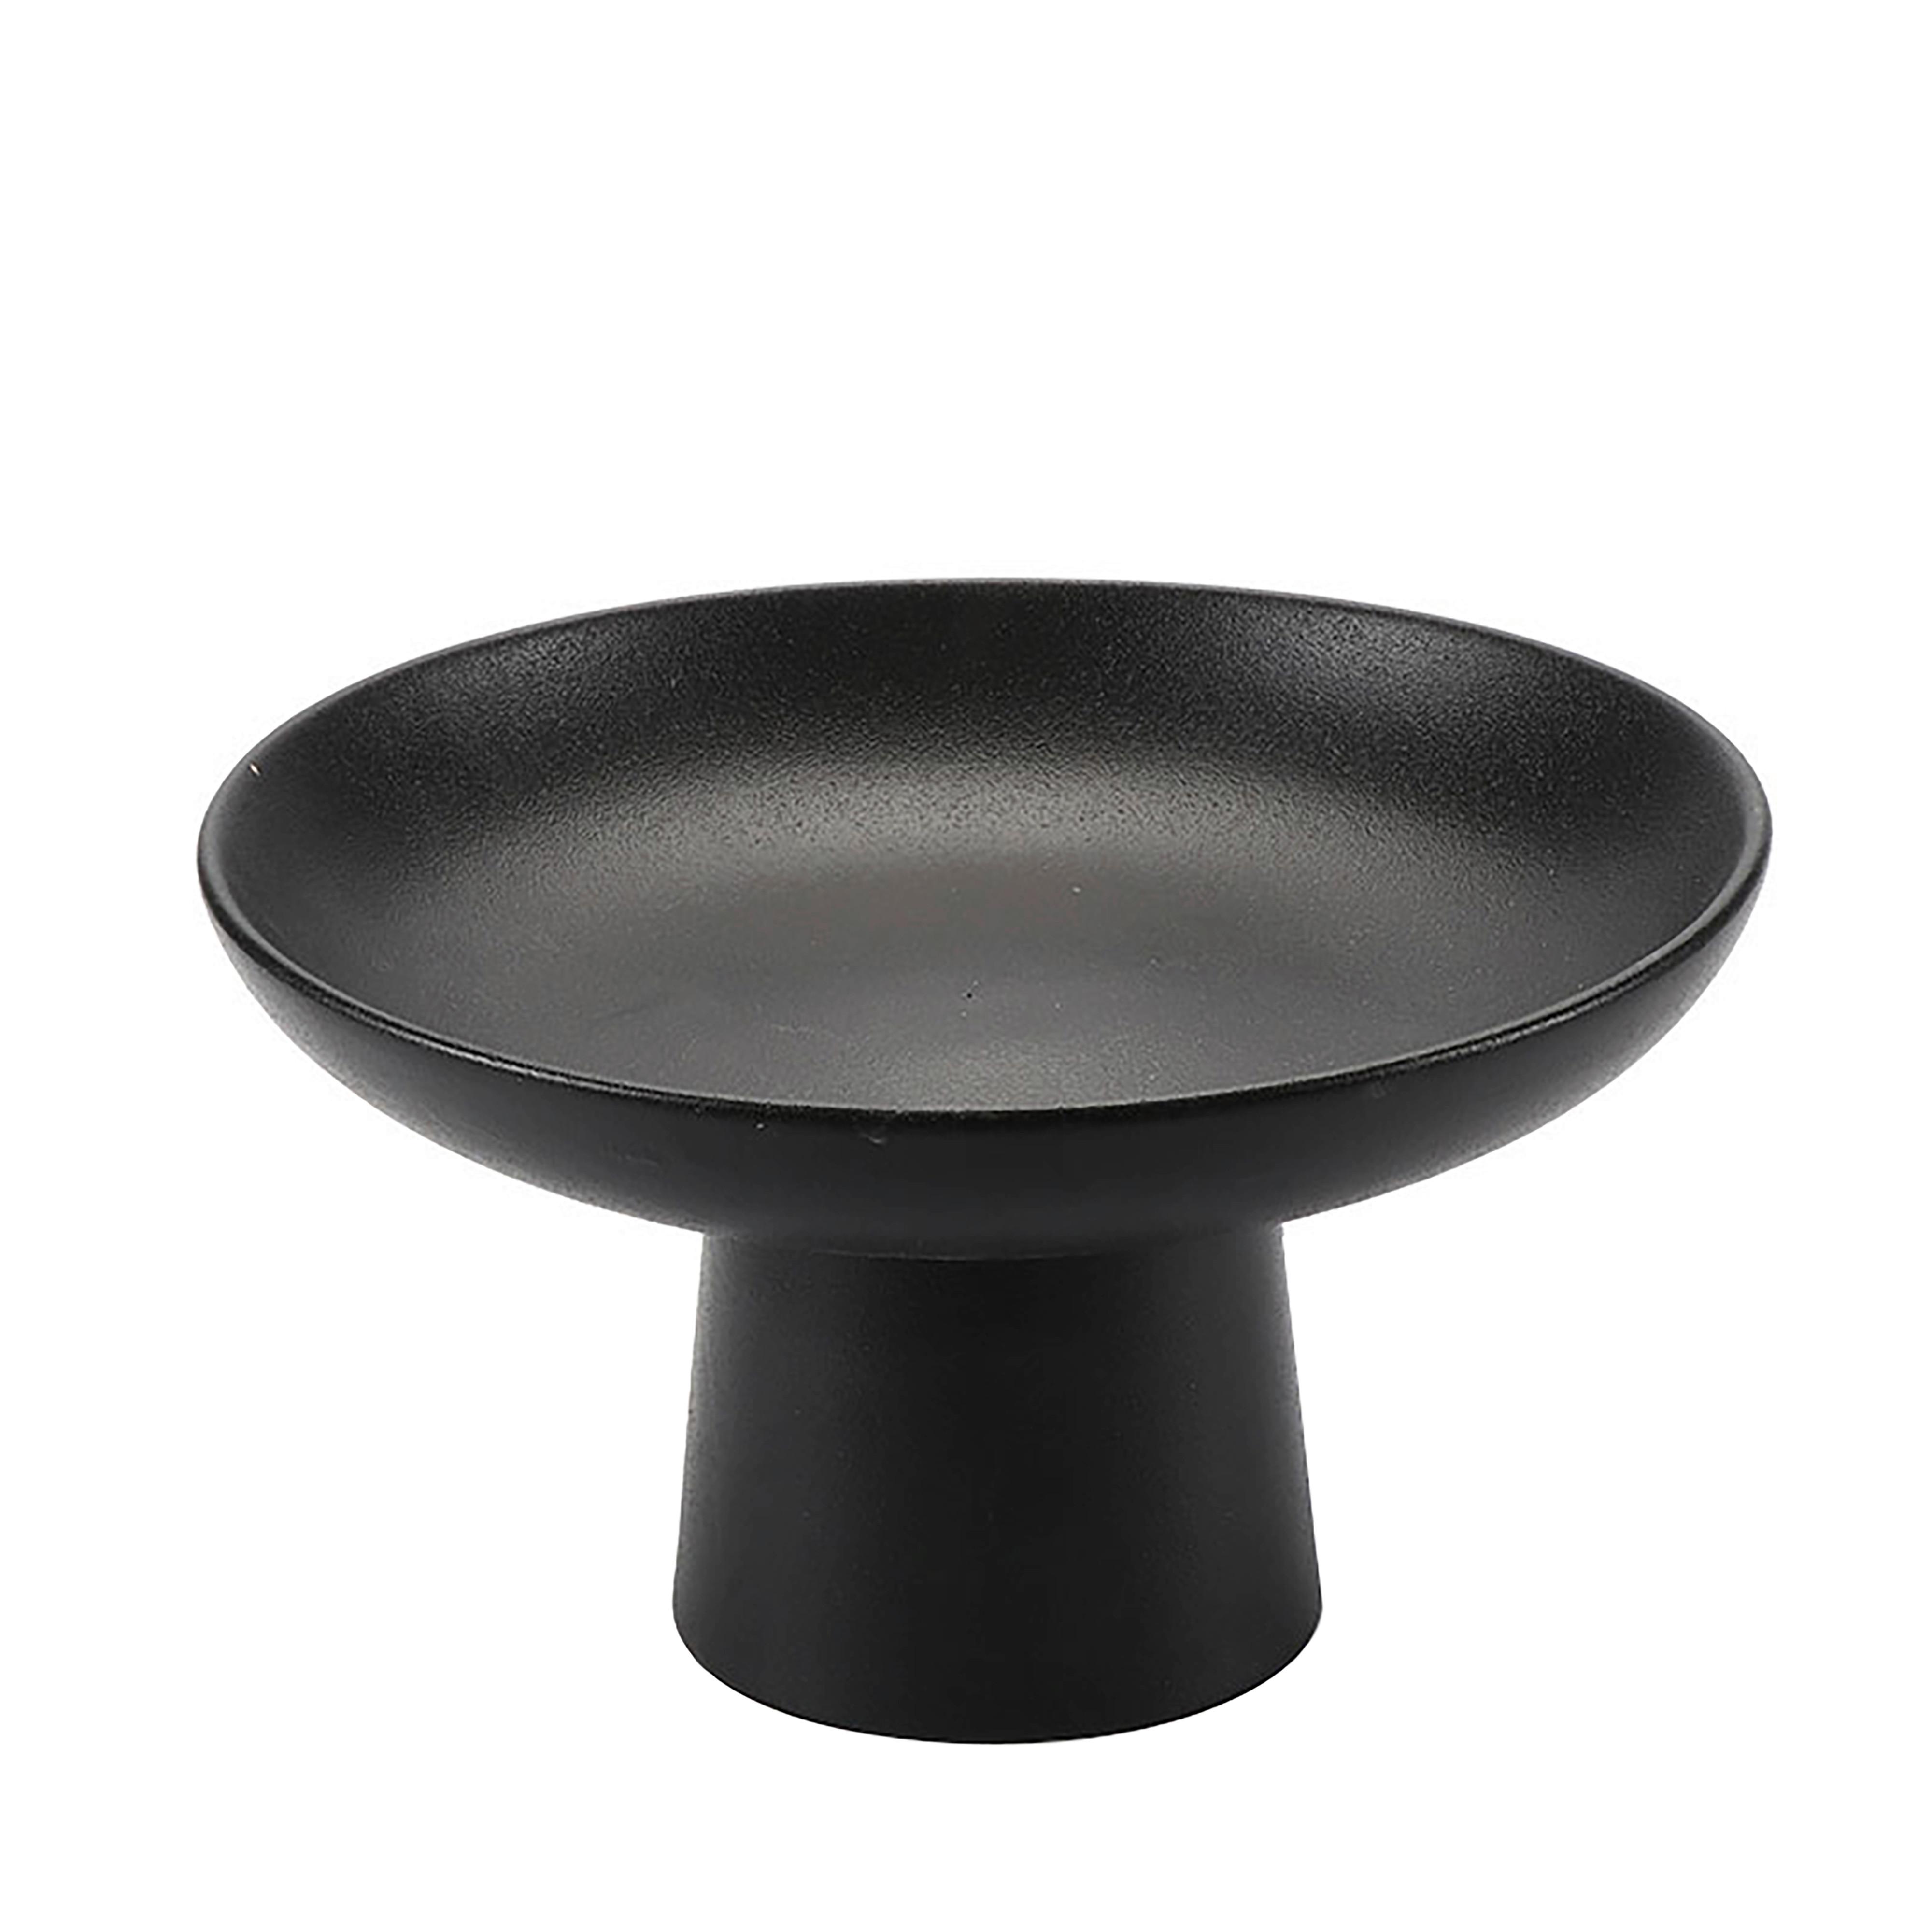 Dekoračná Miska Noir, Ø: 23cm - čierna, keramika (23/13cm) - Modern Living